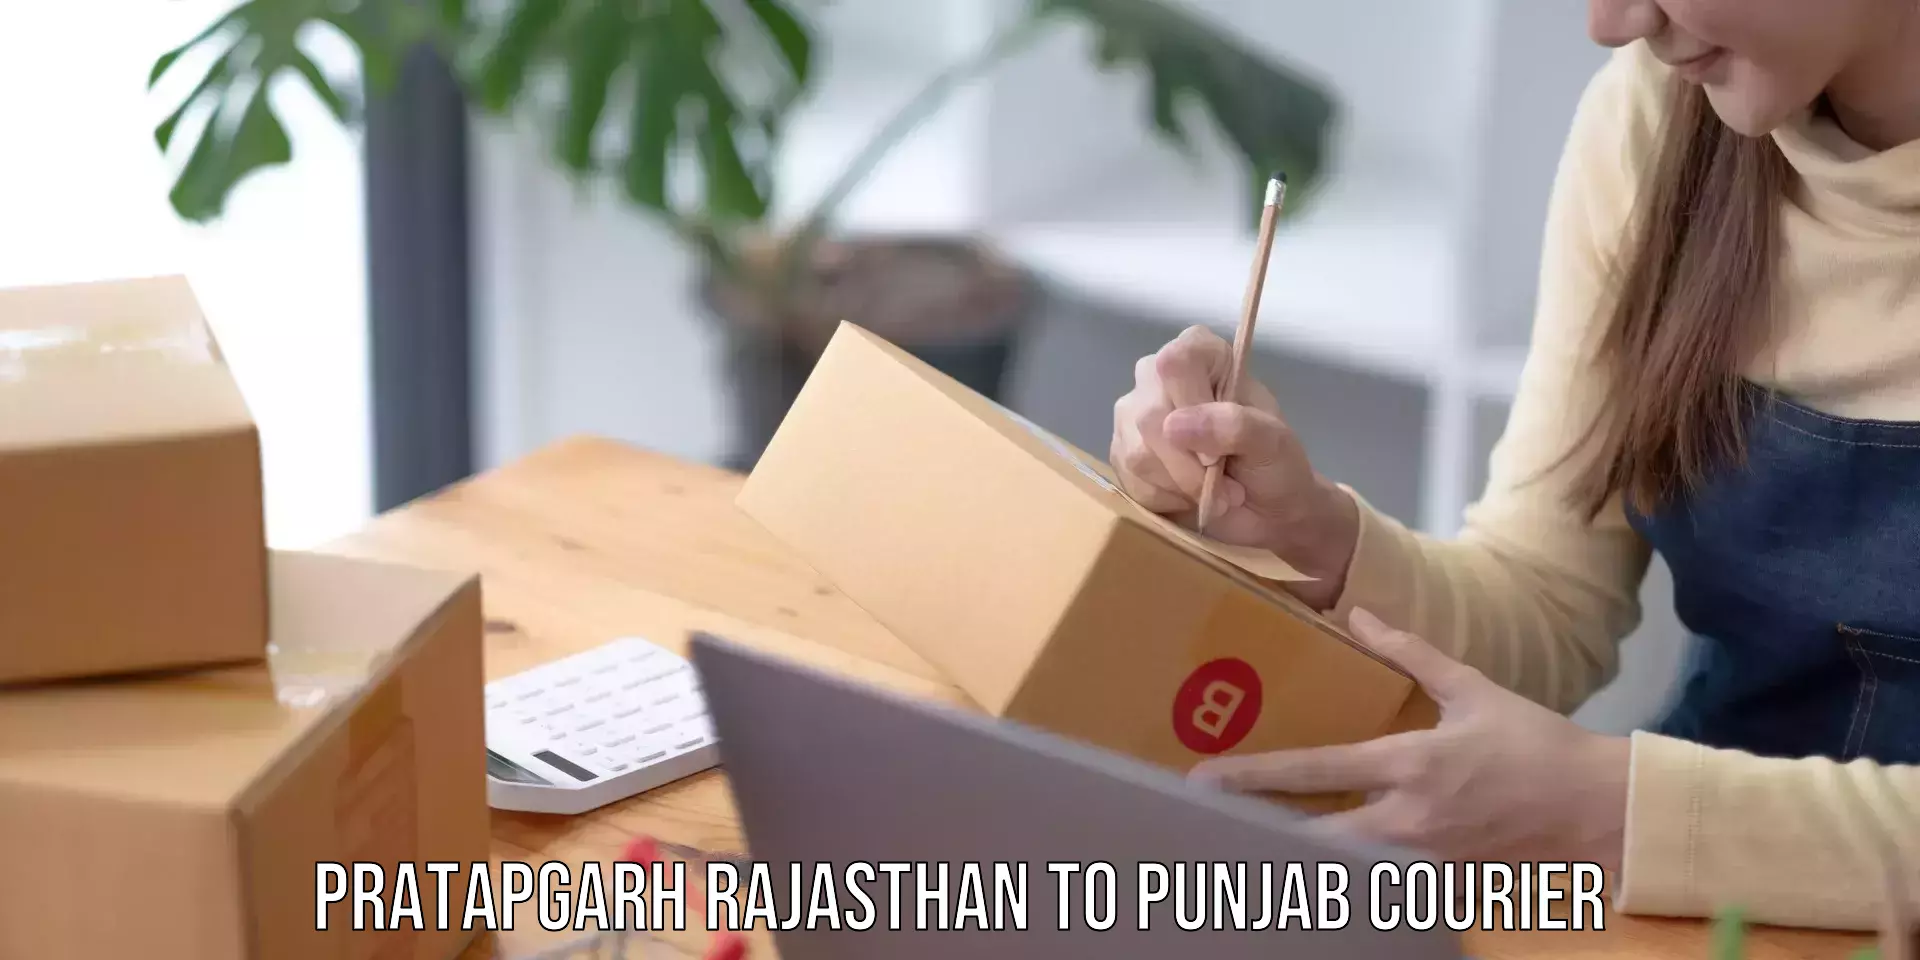 User-friendly courier app Pratapgarh Rajasthan to Dera Bassi